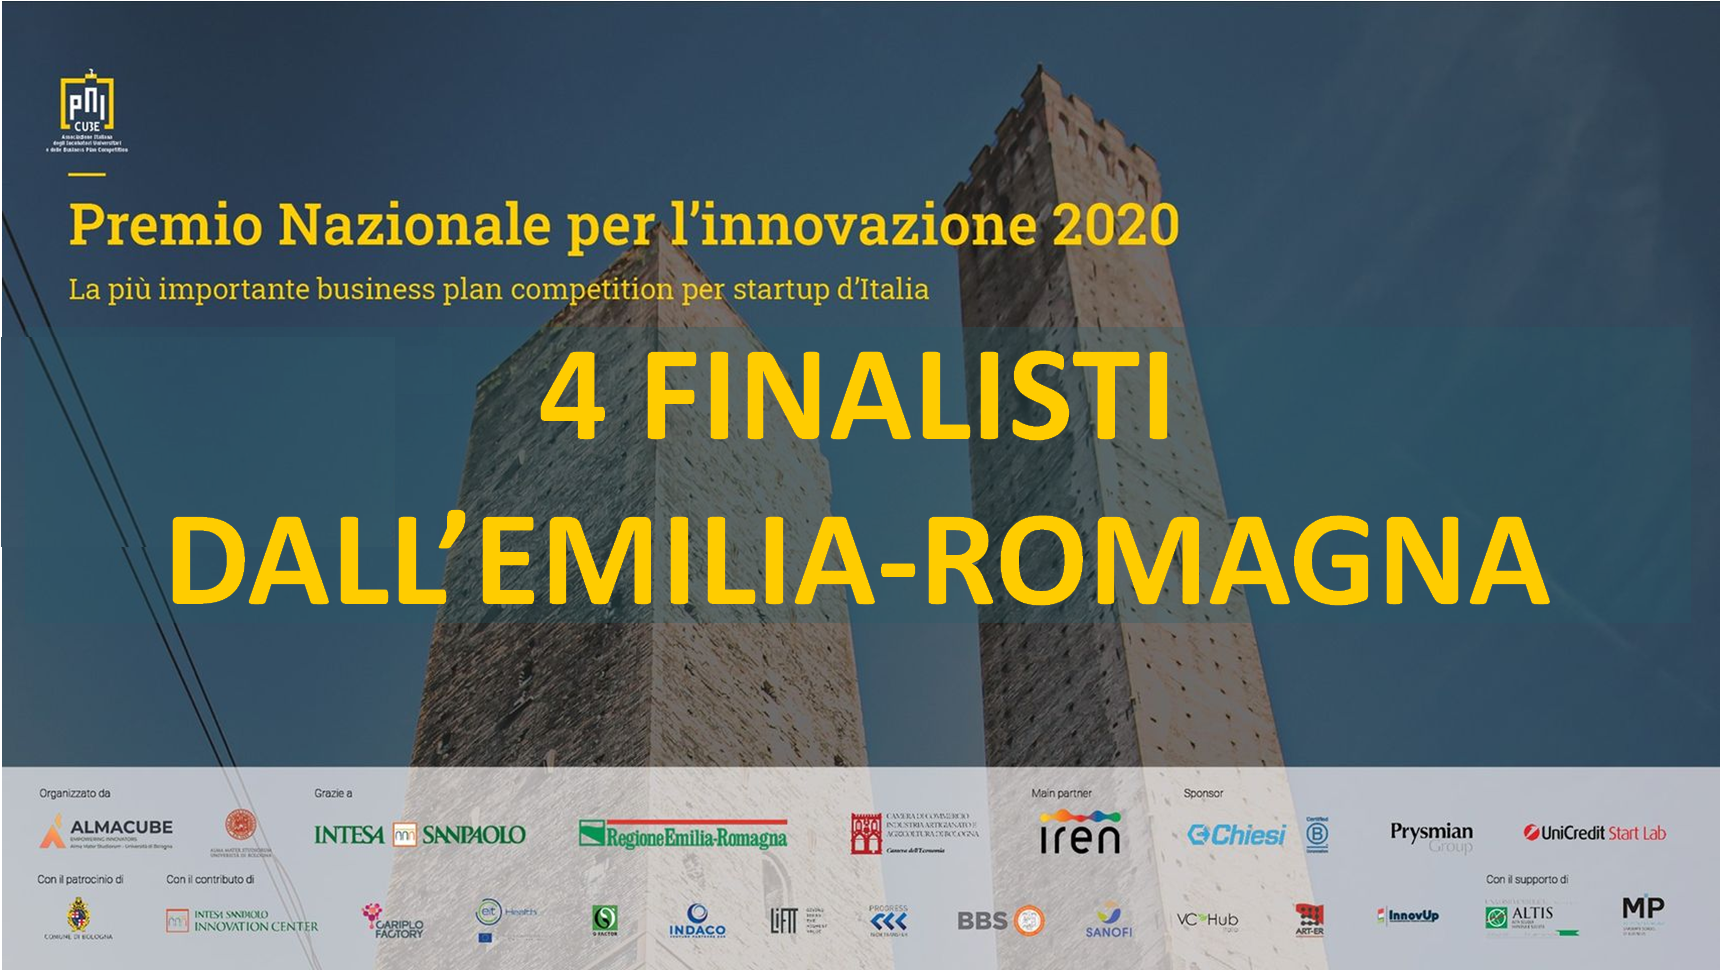 4 su 5 superfinalisti al PNI sono dell'Emilia-Romagna